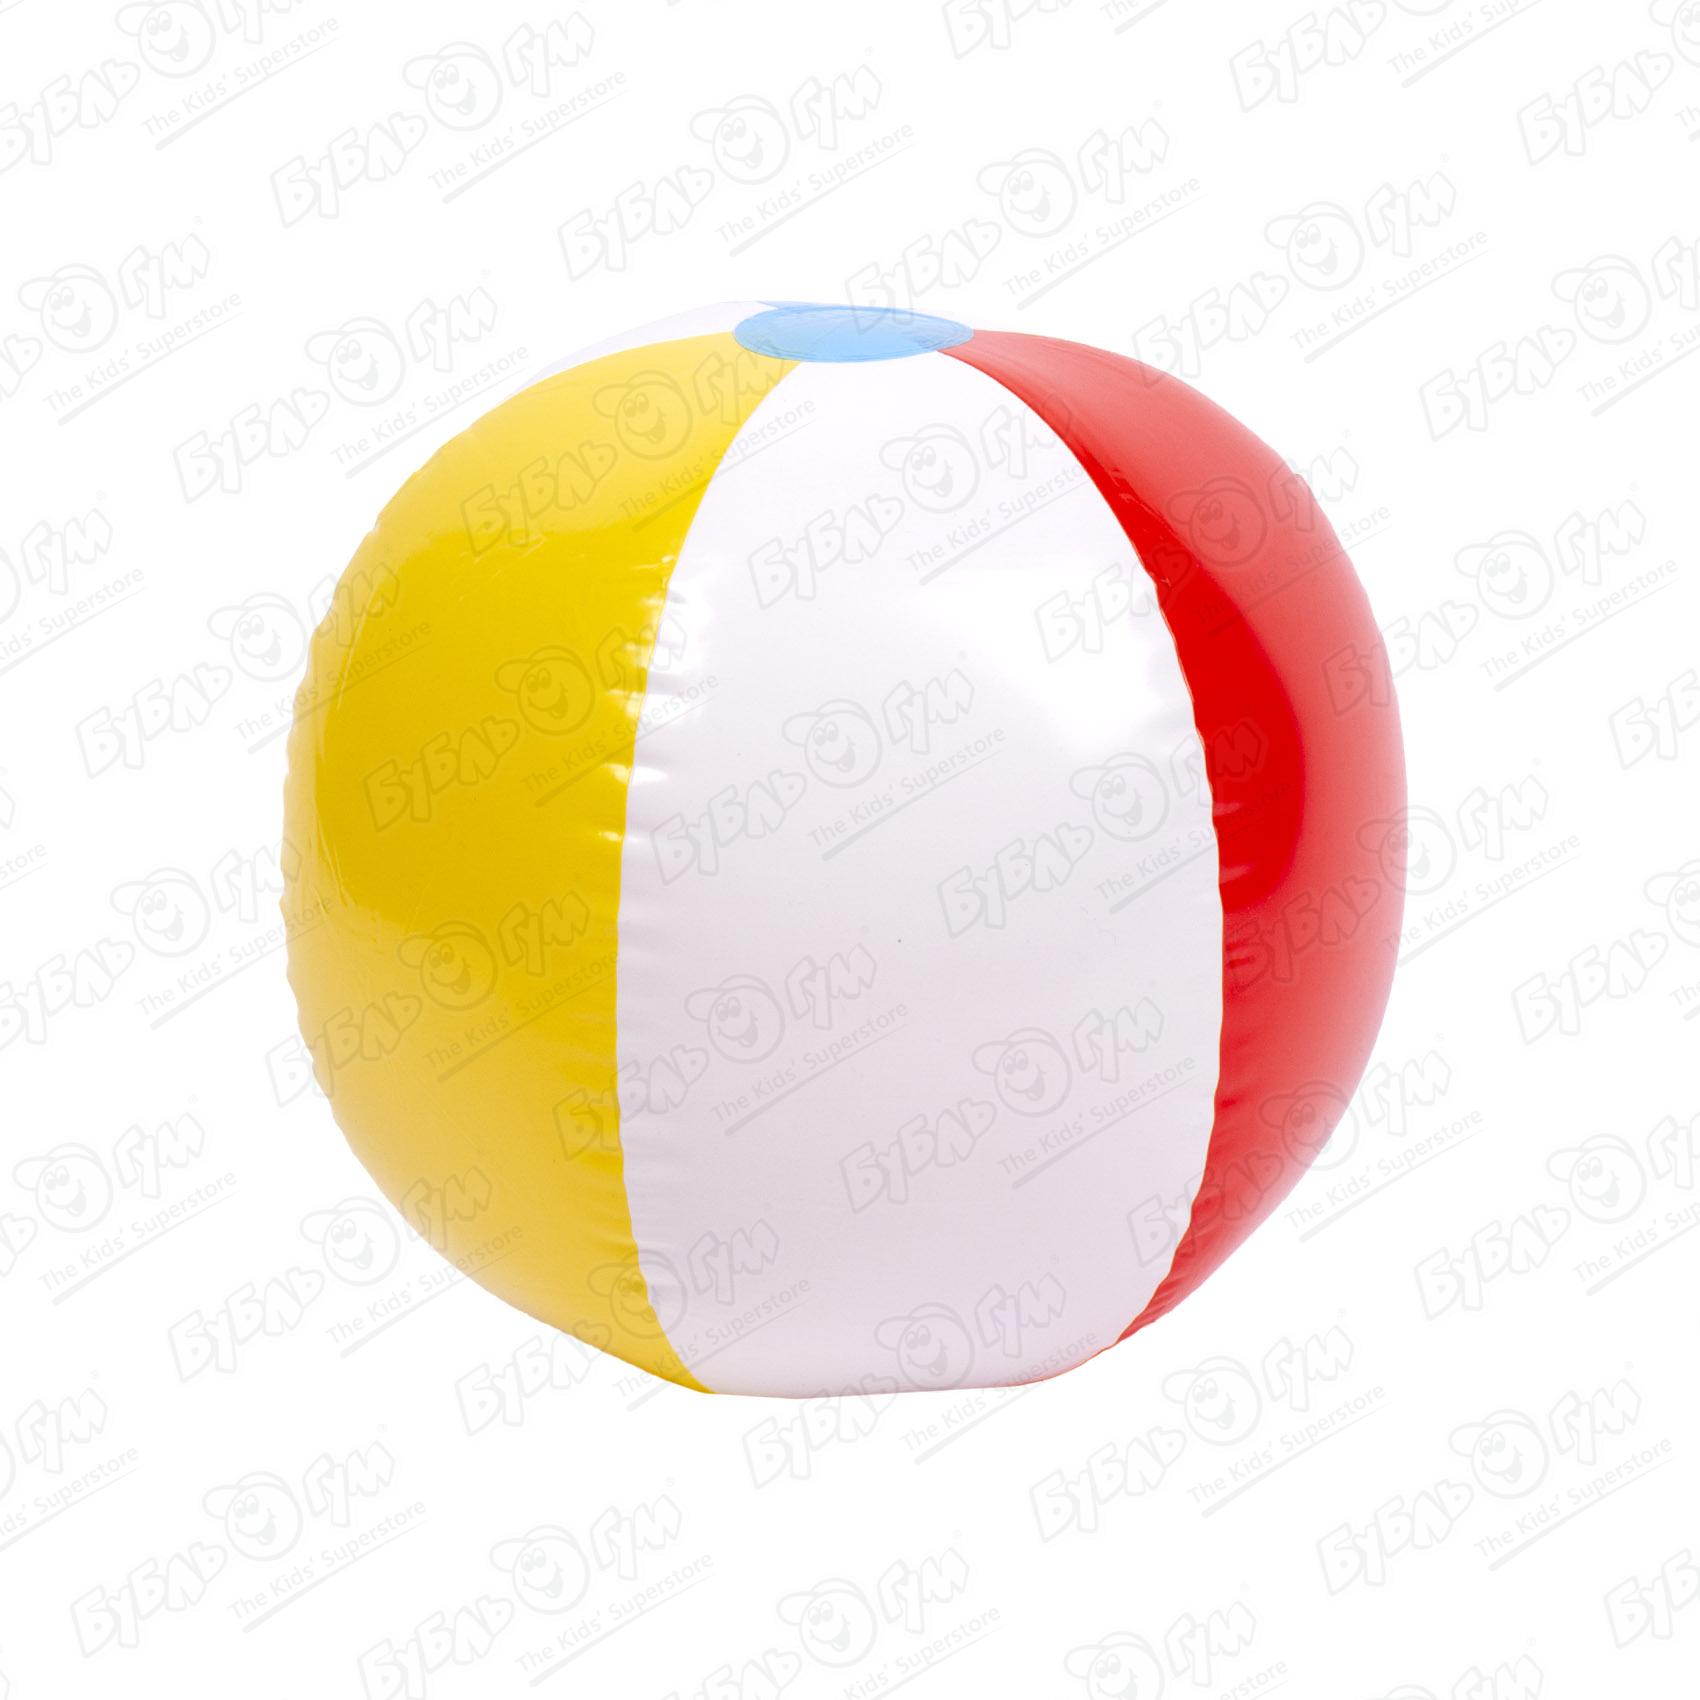 Мяч надувной пляжный Bestway 51см надувной пляжный мяч винни диаметр 51см от 3 лет арт 58025 интекс